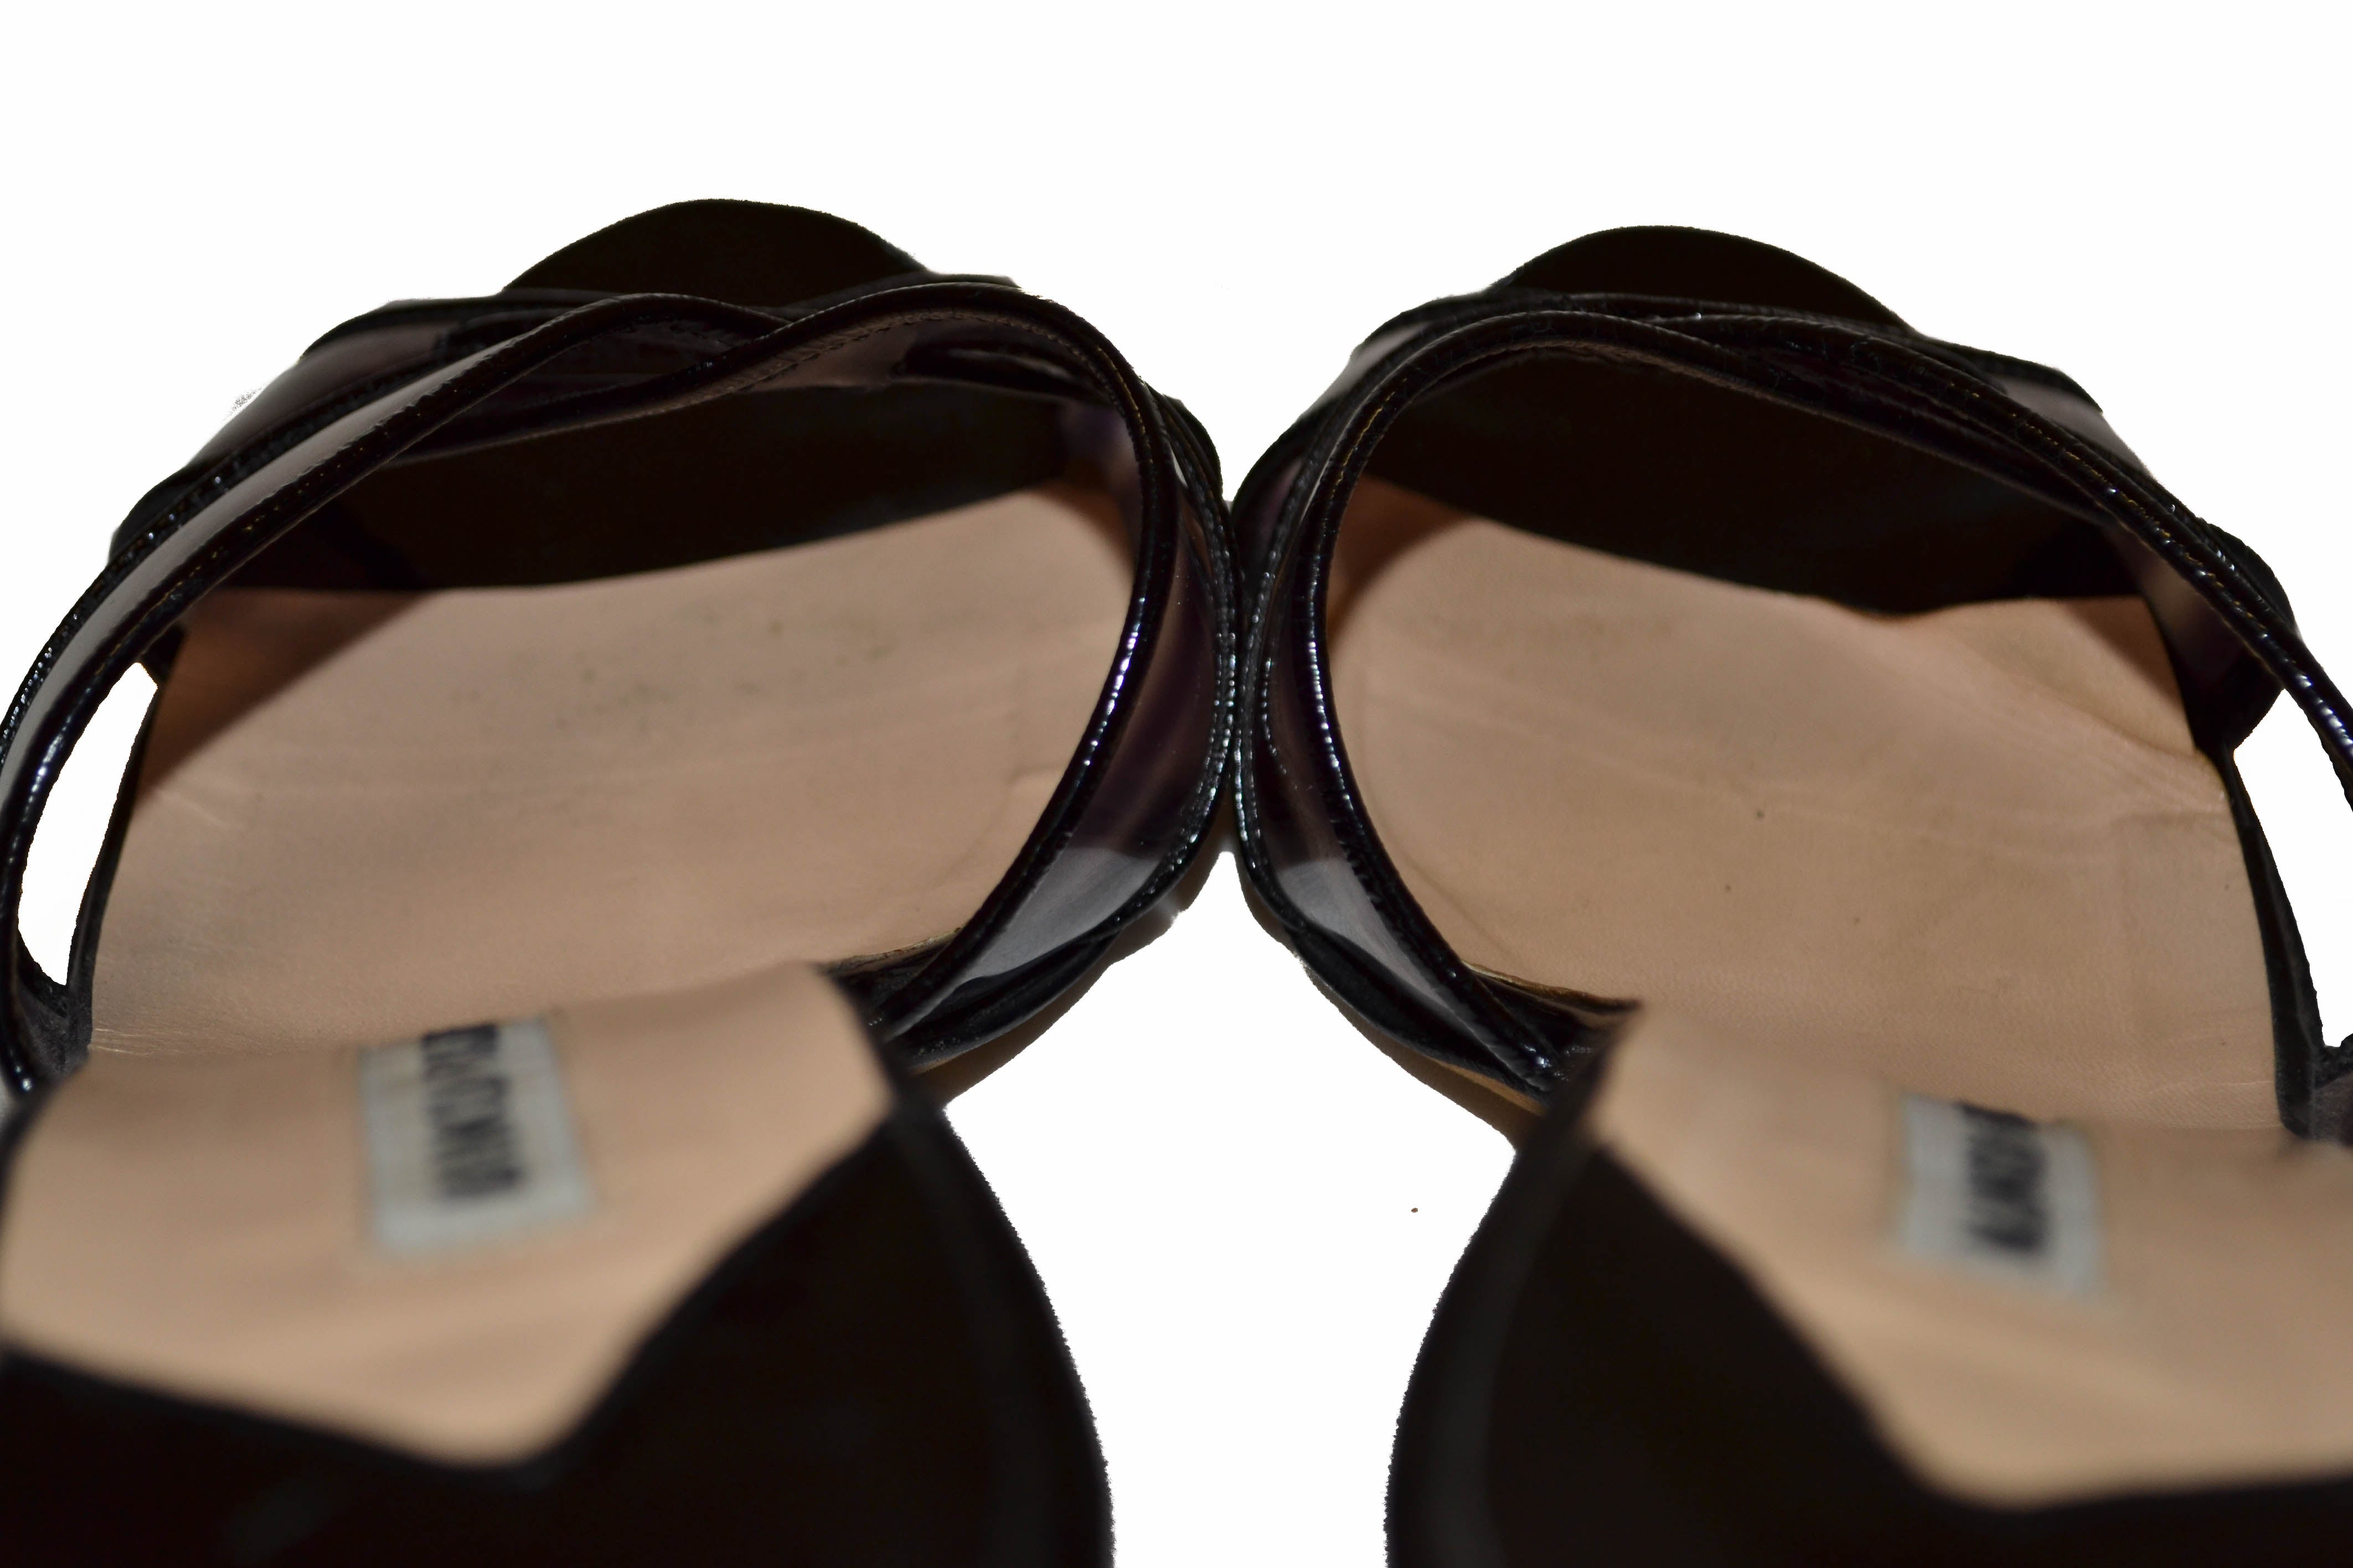 Authentic Manolo Blahnik Black Sandal Size 37